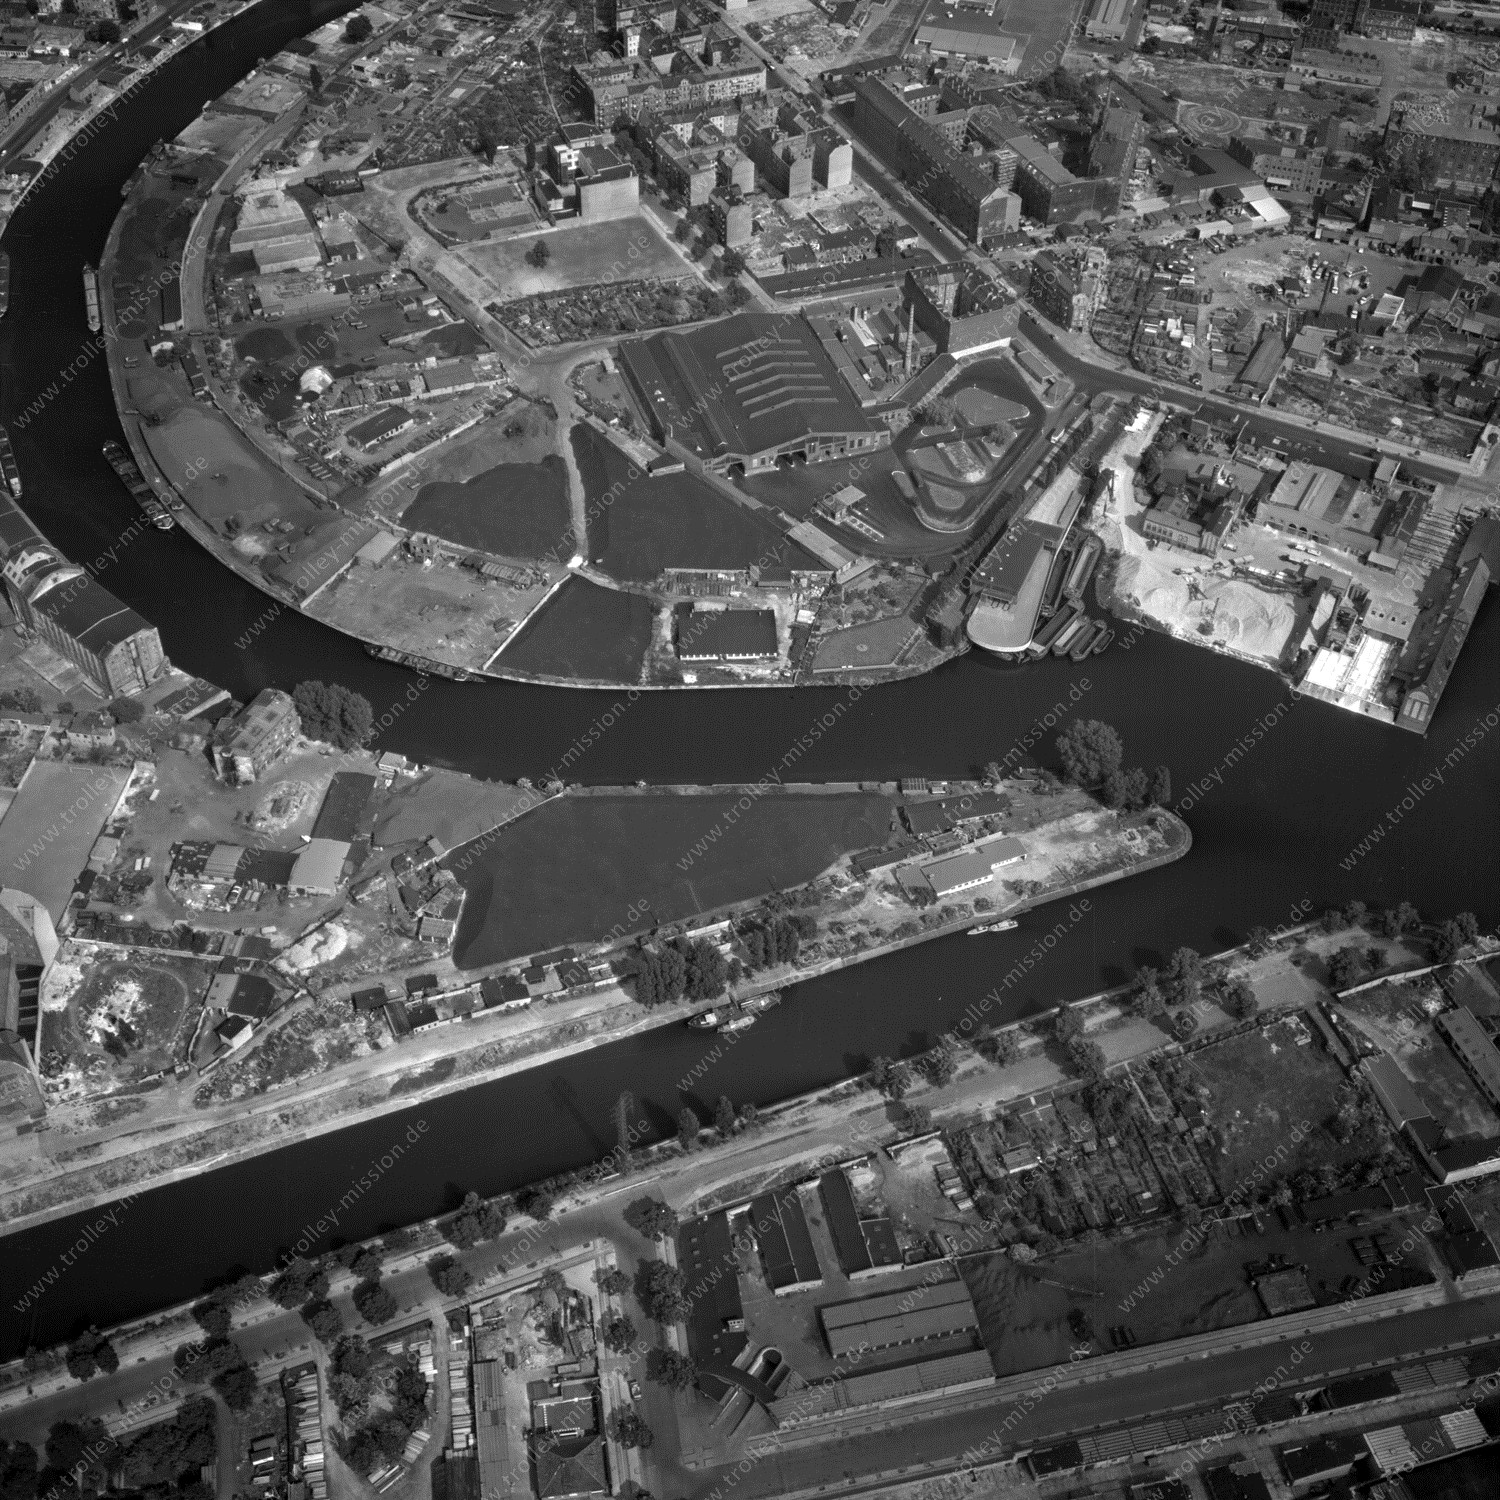 Alte Fotos und Luftbilder von Berlin - Luftbildaufnahme Nr. 09 - Historische Luftaufnahmen von West-Berlin aus dem Jahr 1954 - Flugstrecke Tango